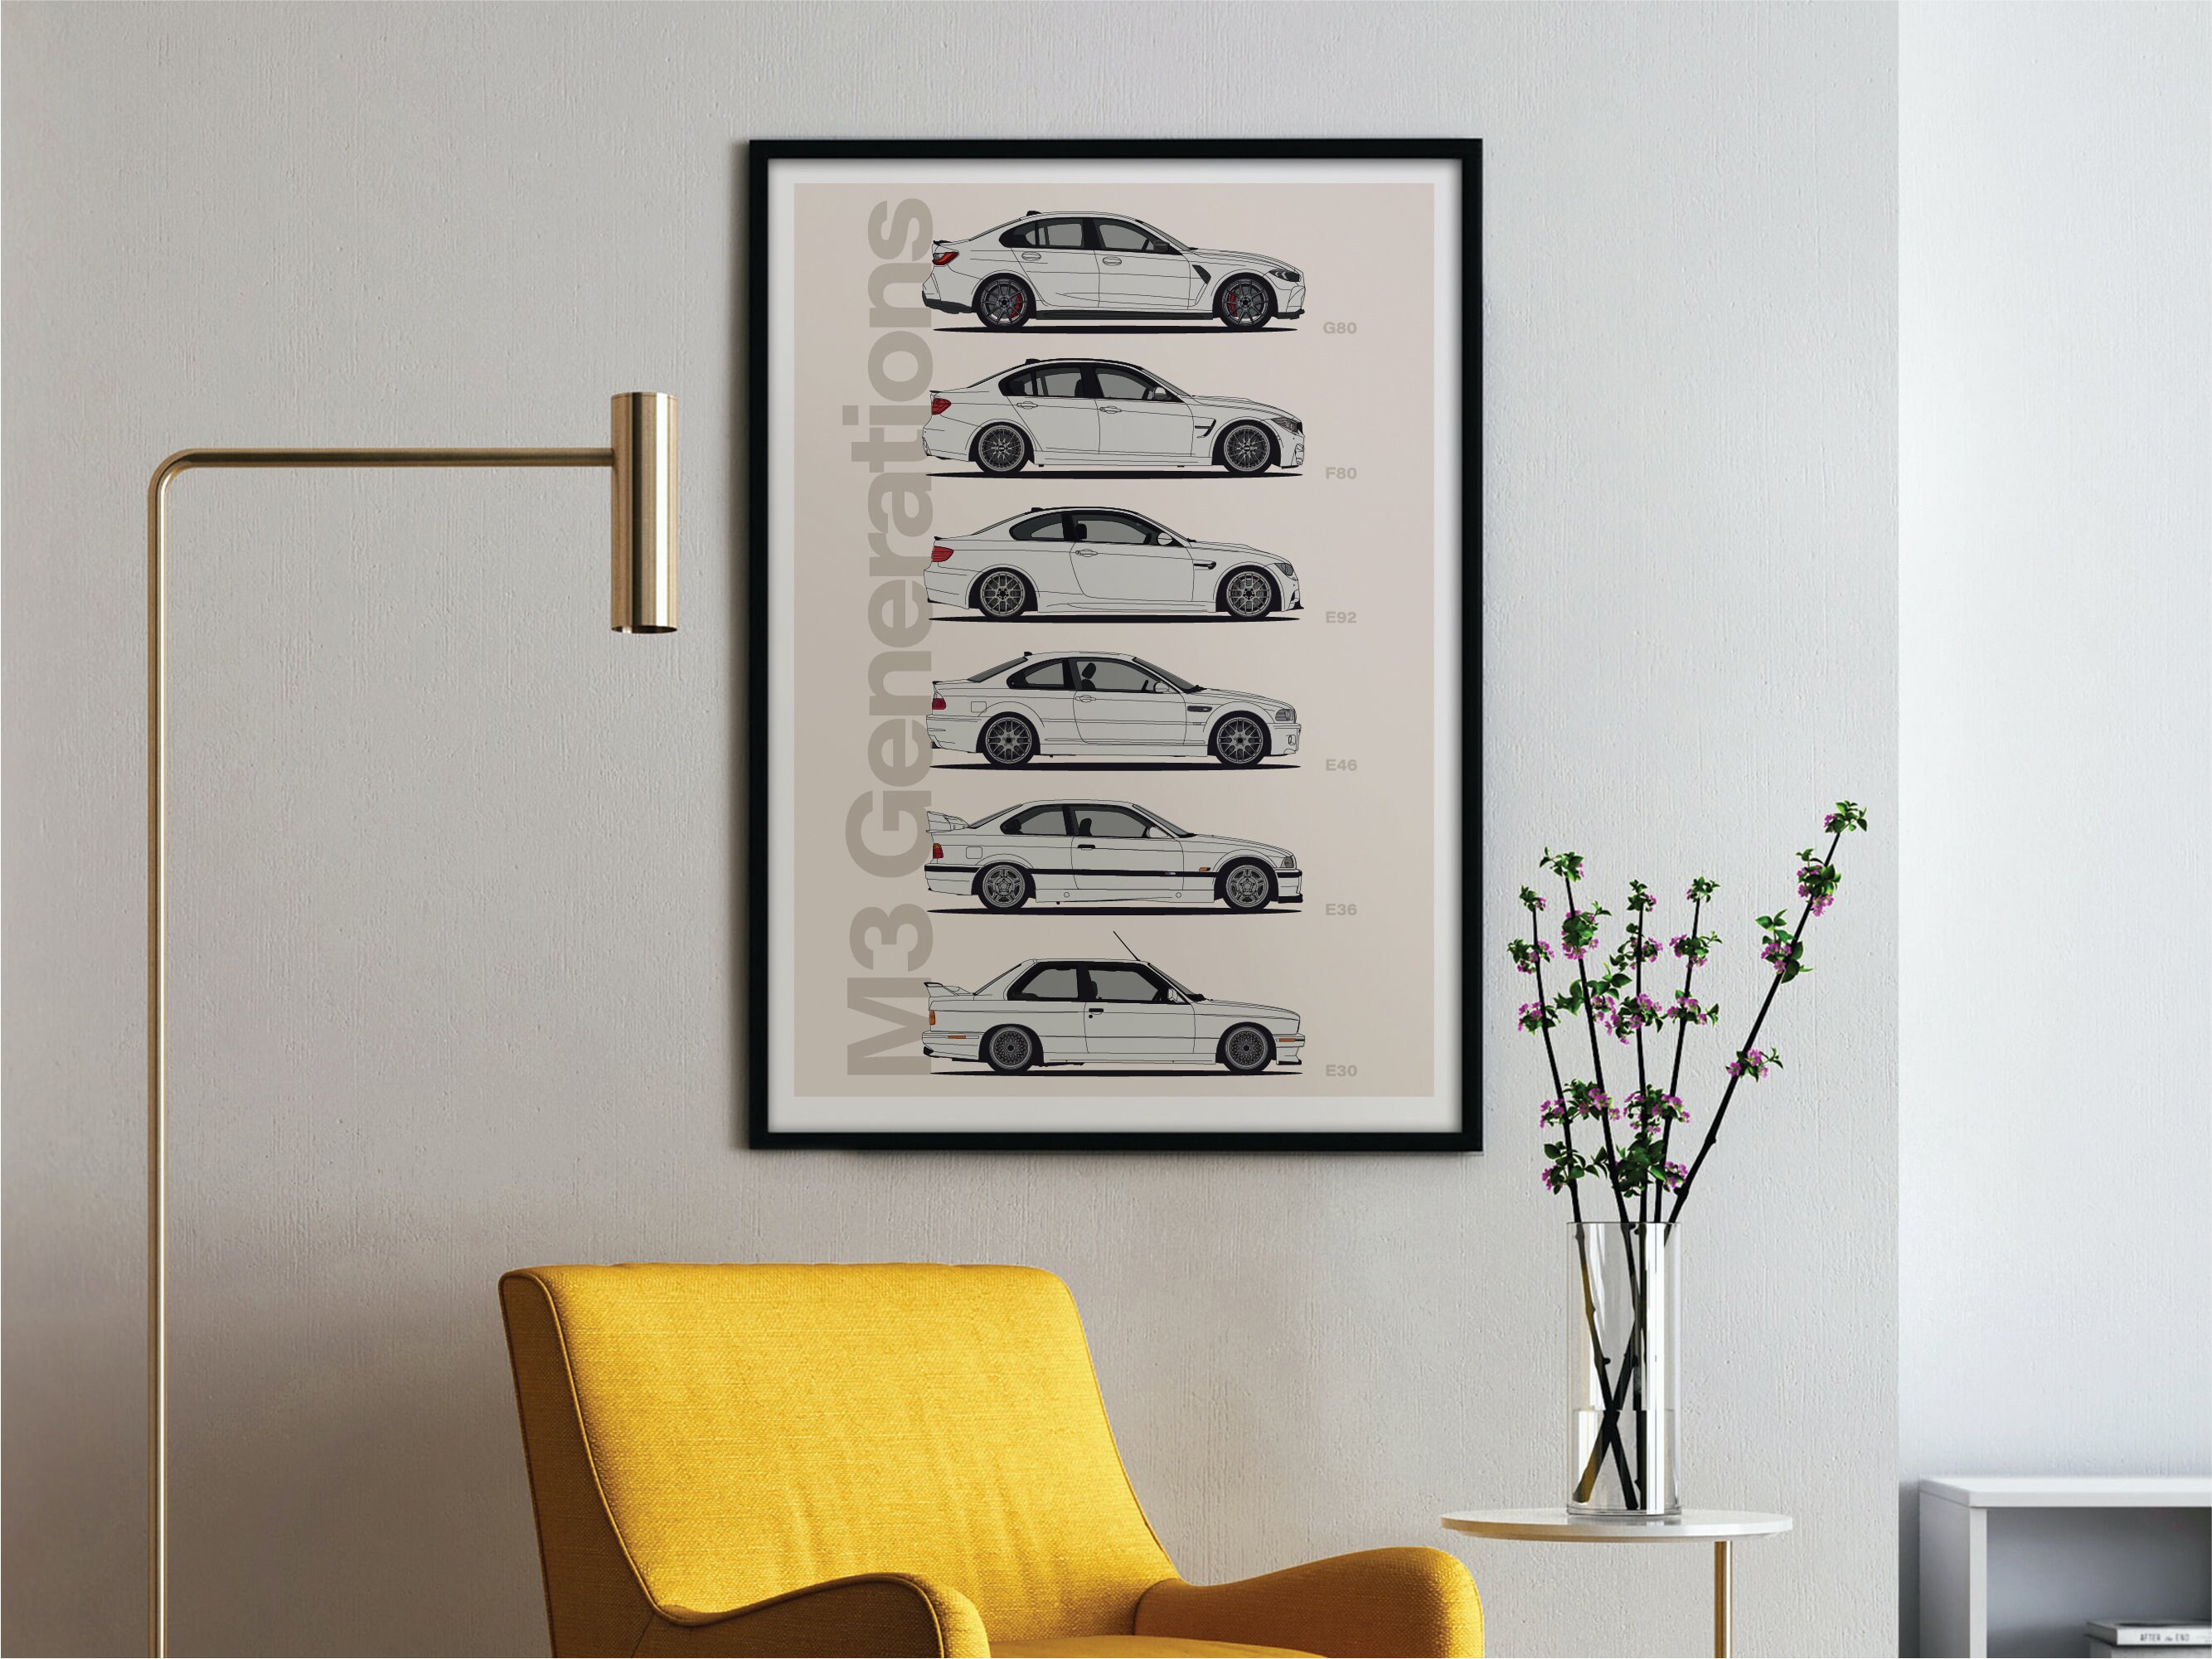 Affiche de voiture ancienne M3 JDM BMW Garçons Algeria